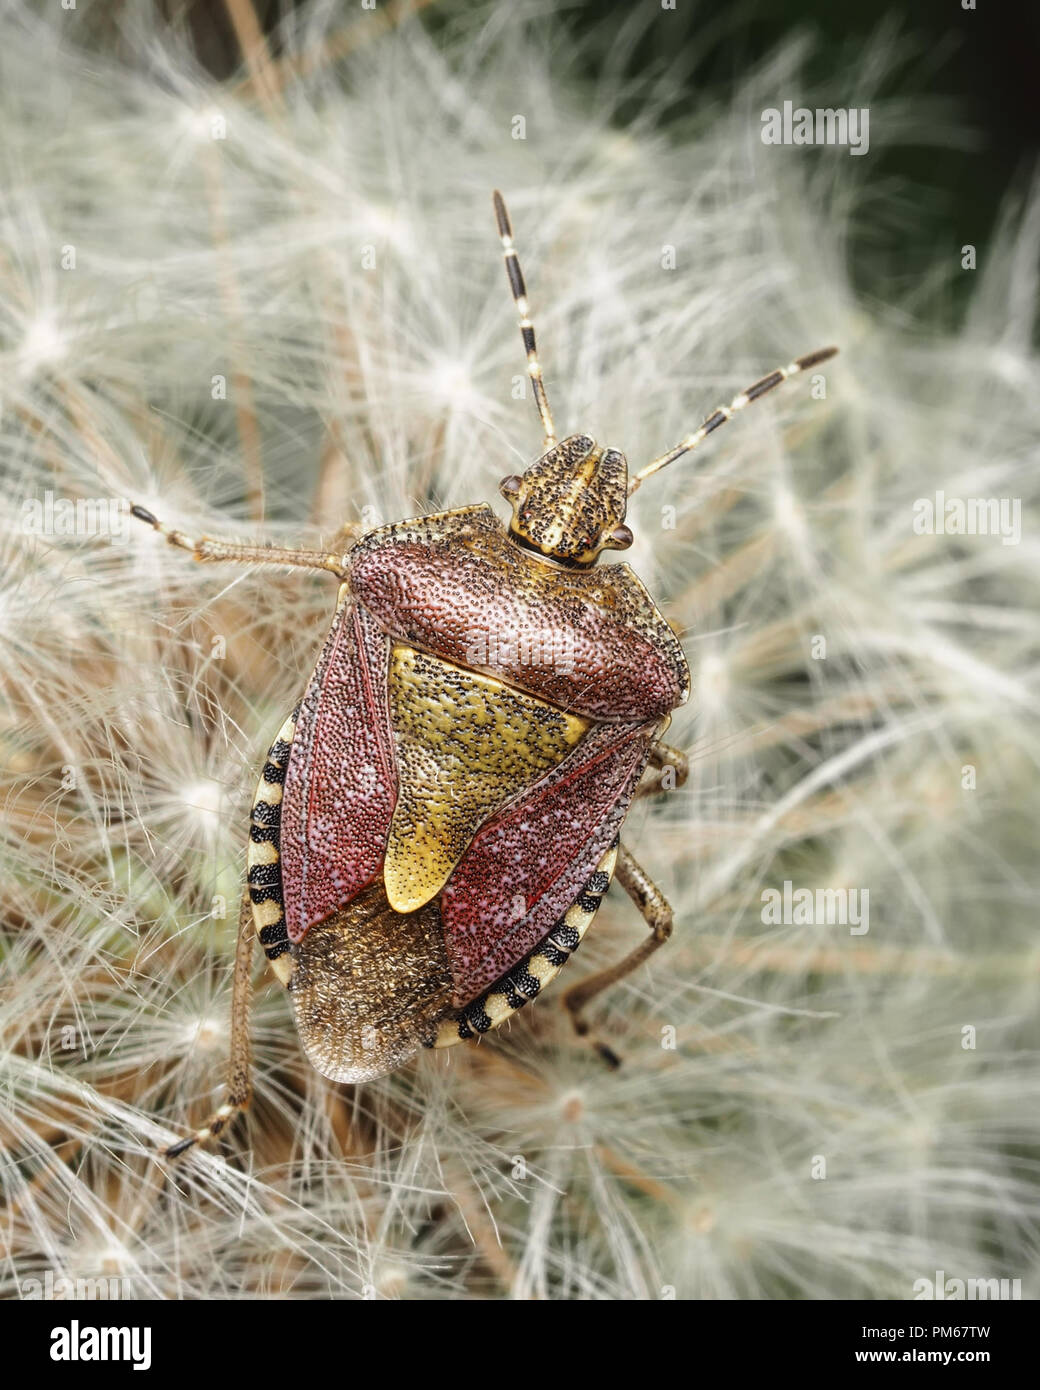 Dolycoris baccarum (Shieldbug poilue) assis sur le pissenlit graines. Tipperary, Irlande Banque D'Images